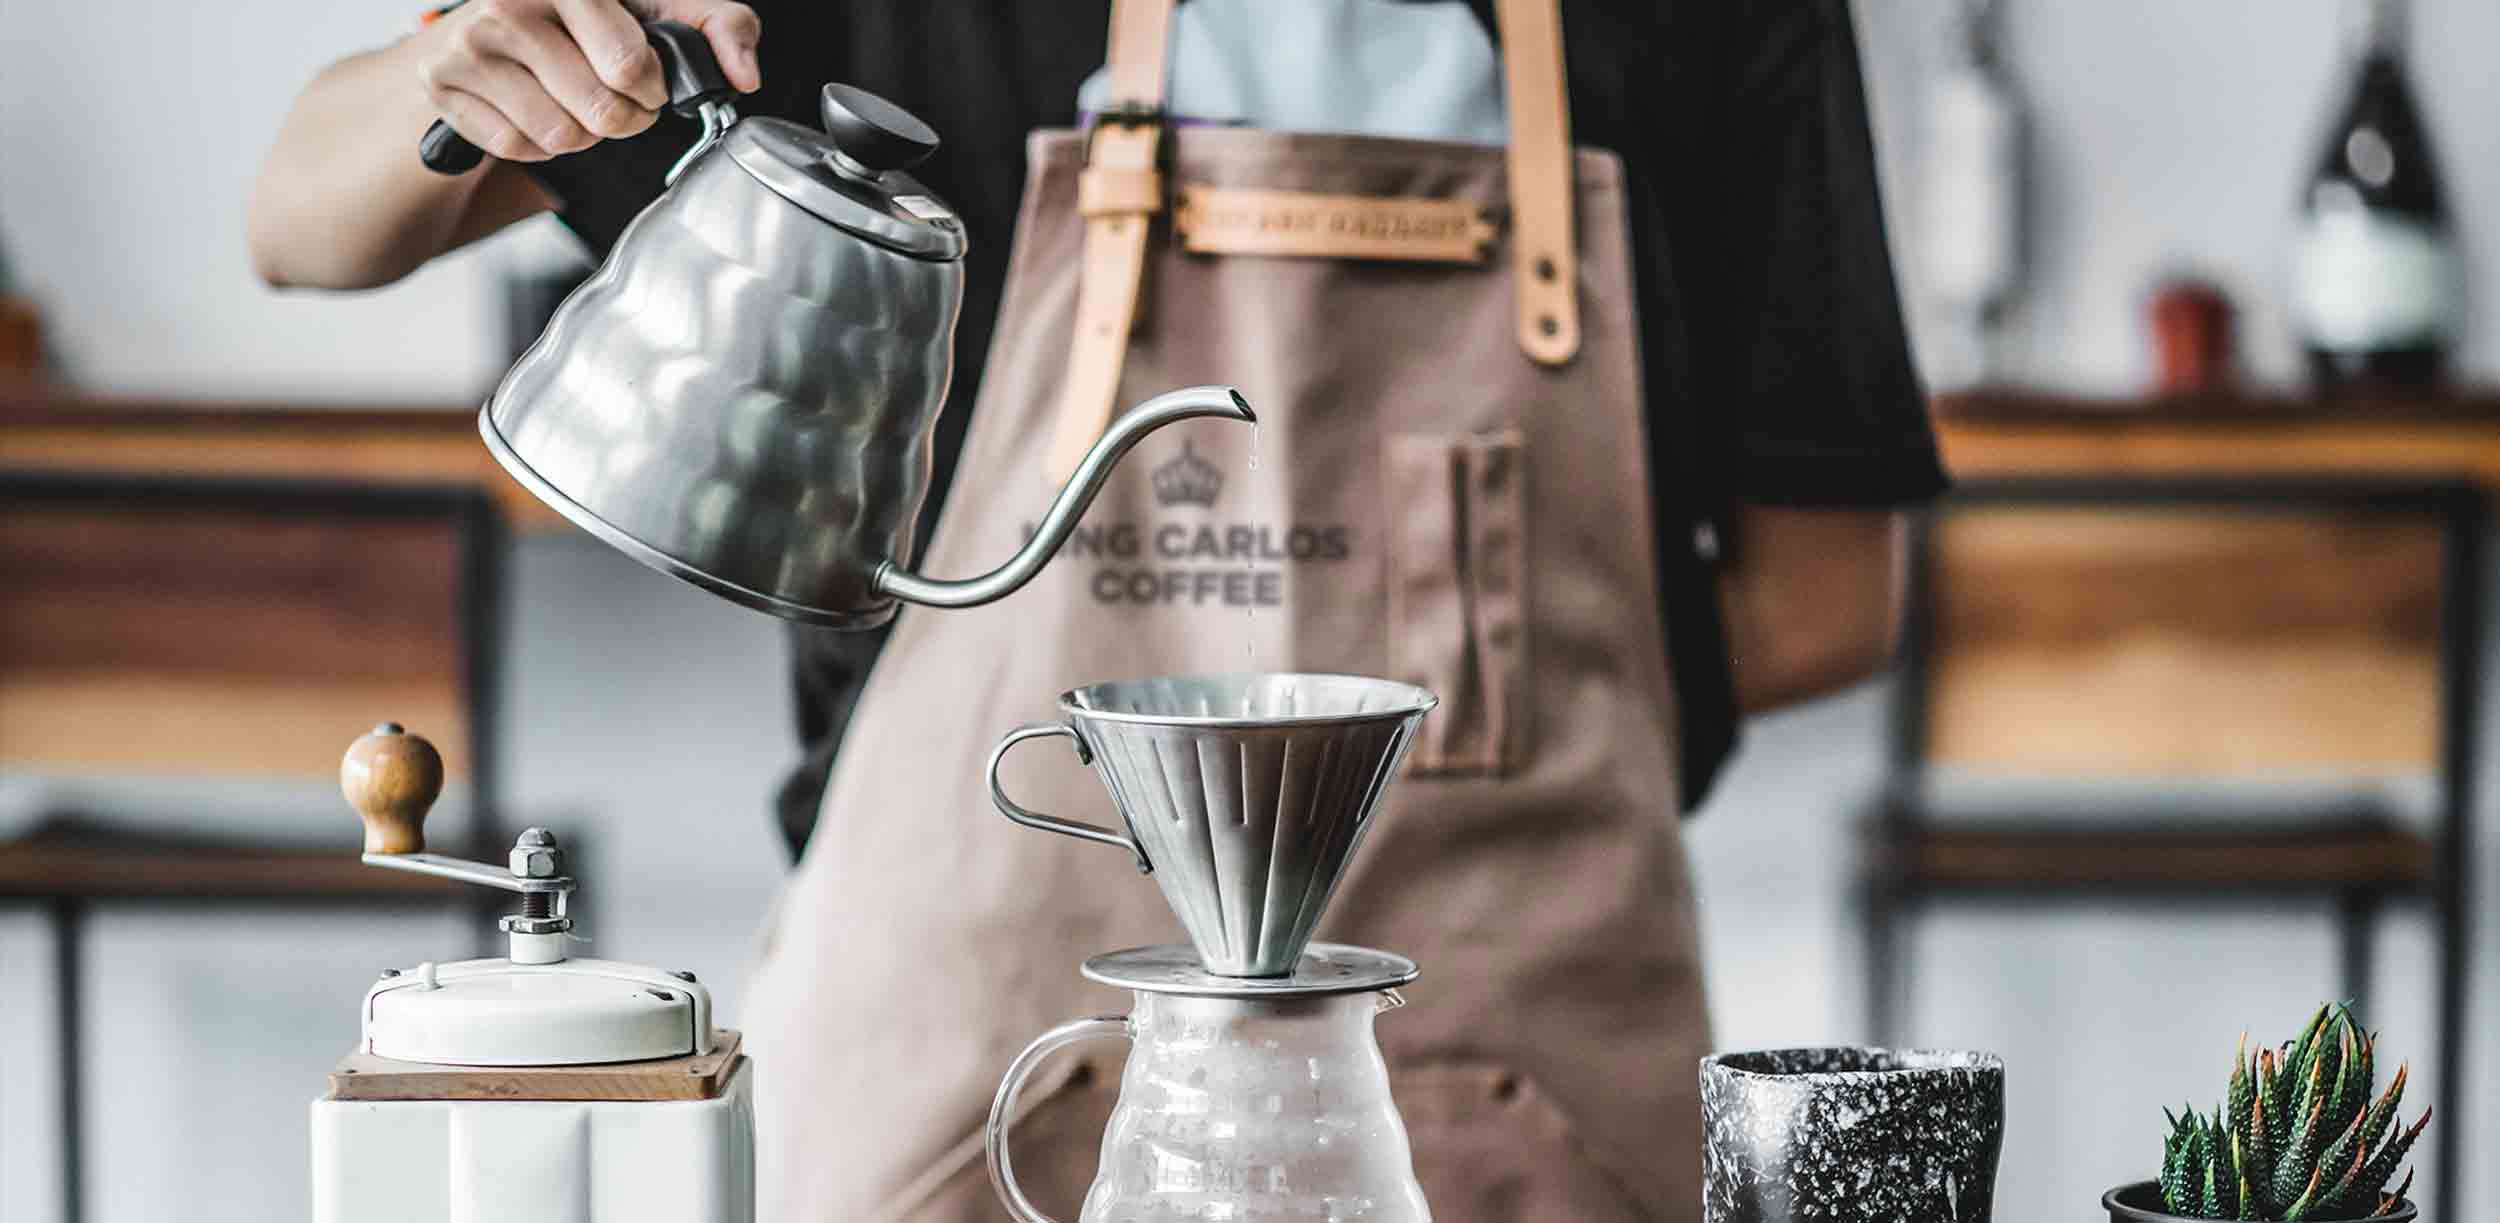 Coffee_roaster_sydney_king_carlos_coffee